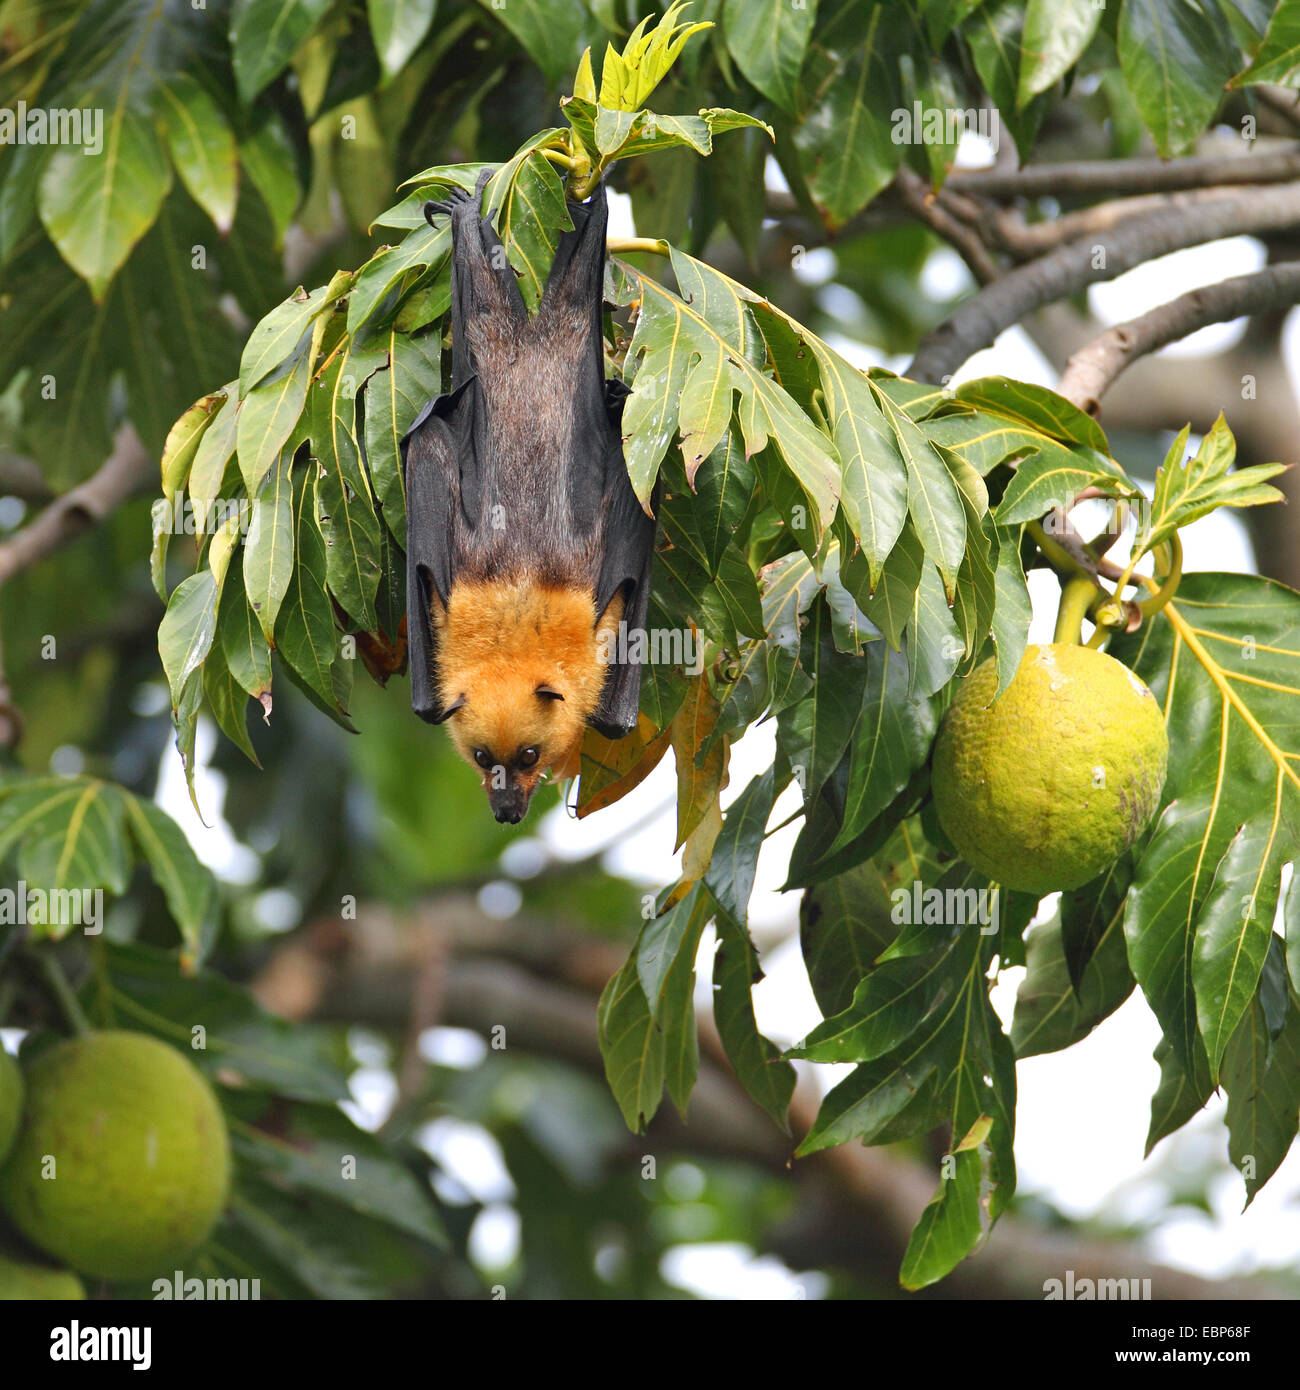 Seychelles, seychelles flying fox (Pteropus seychellensis fruit bat), suspendu dans un arbre à pain, Artocarpus altilis, Seychelles, Mahe Banque D'Images